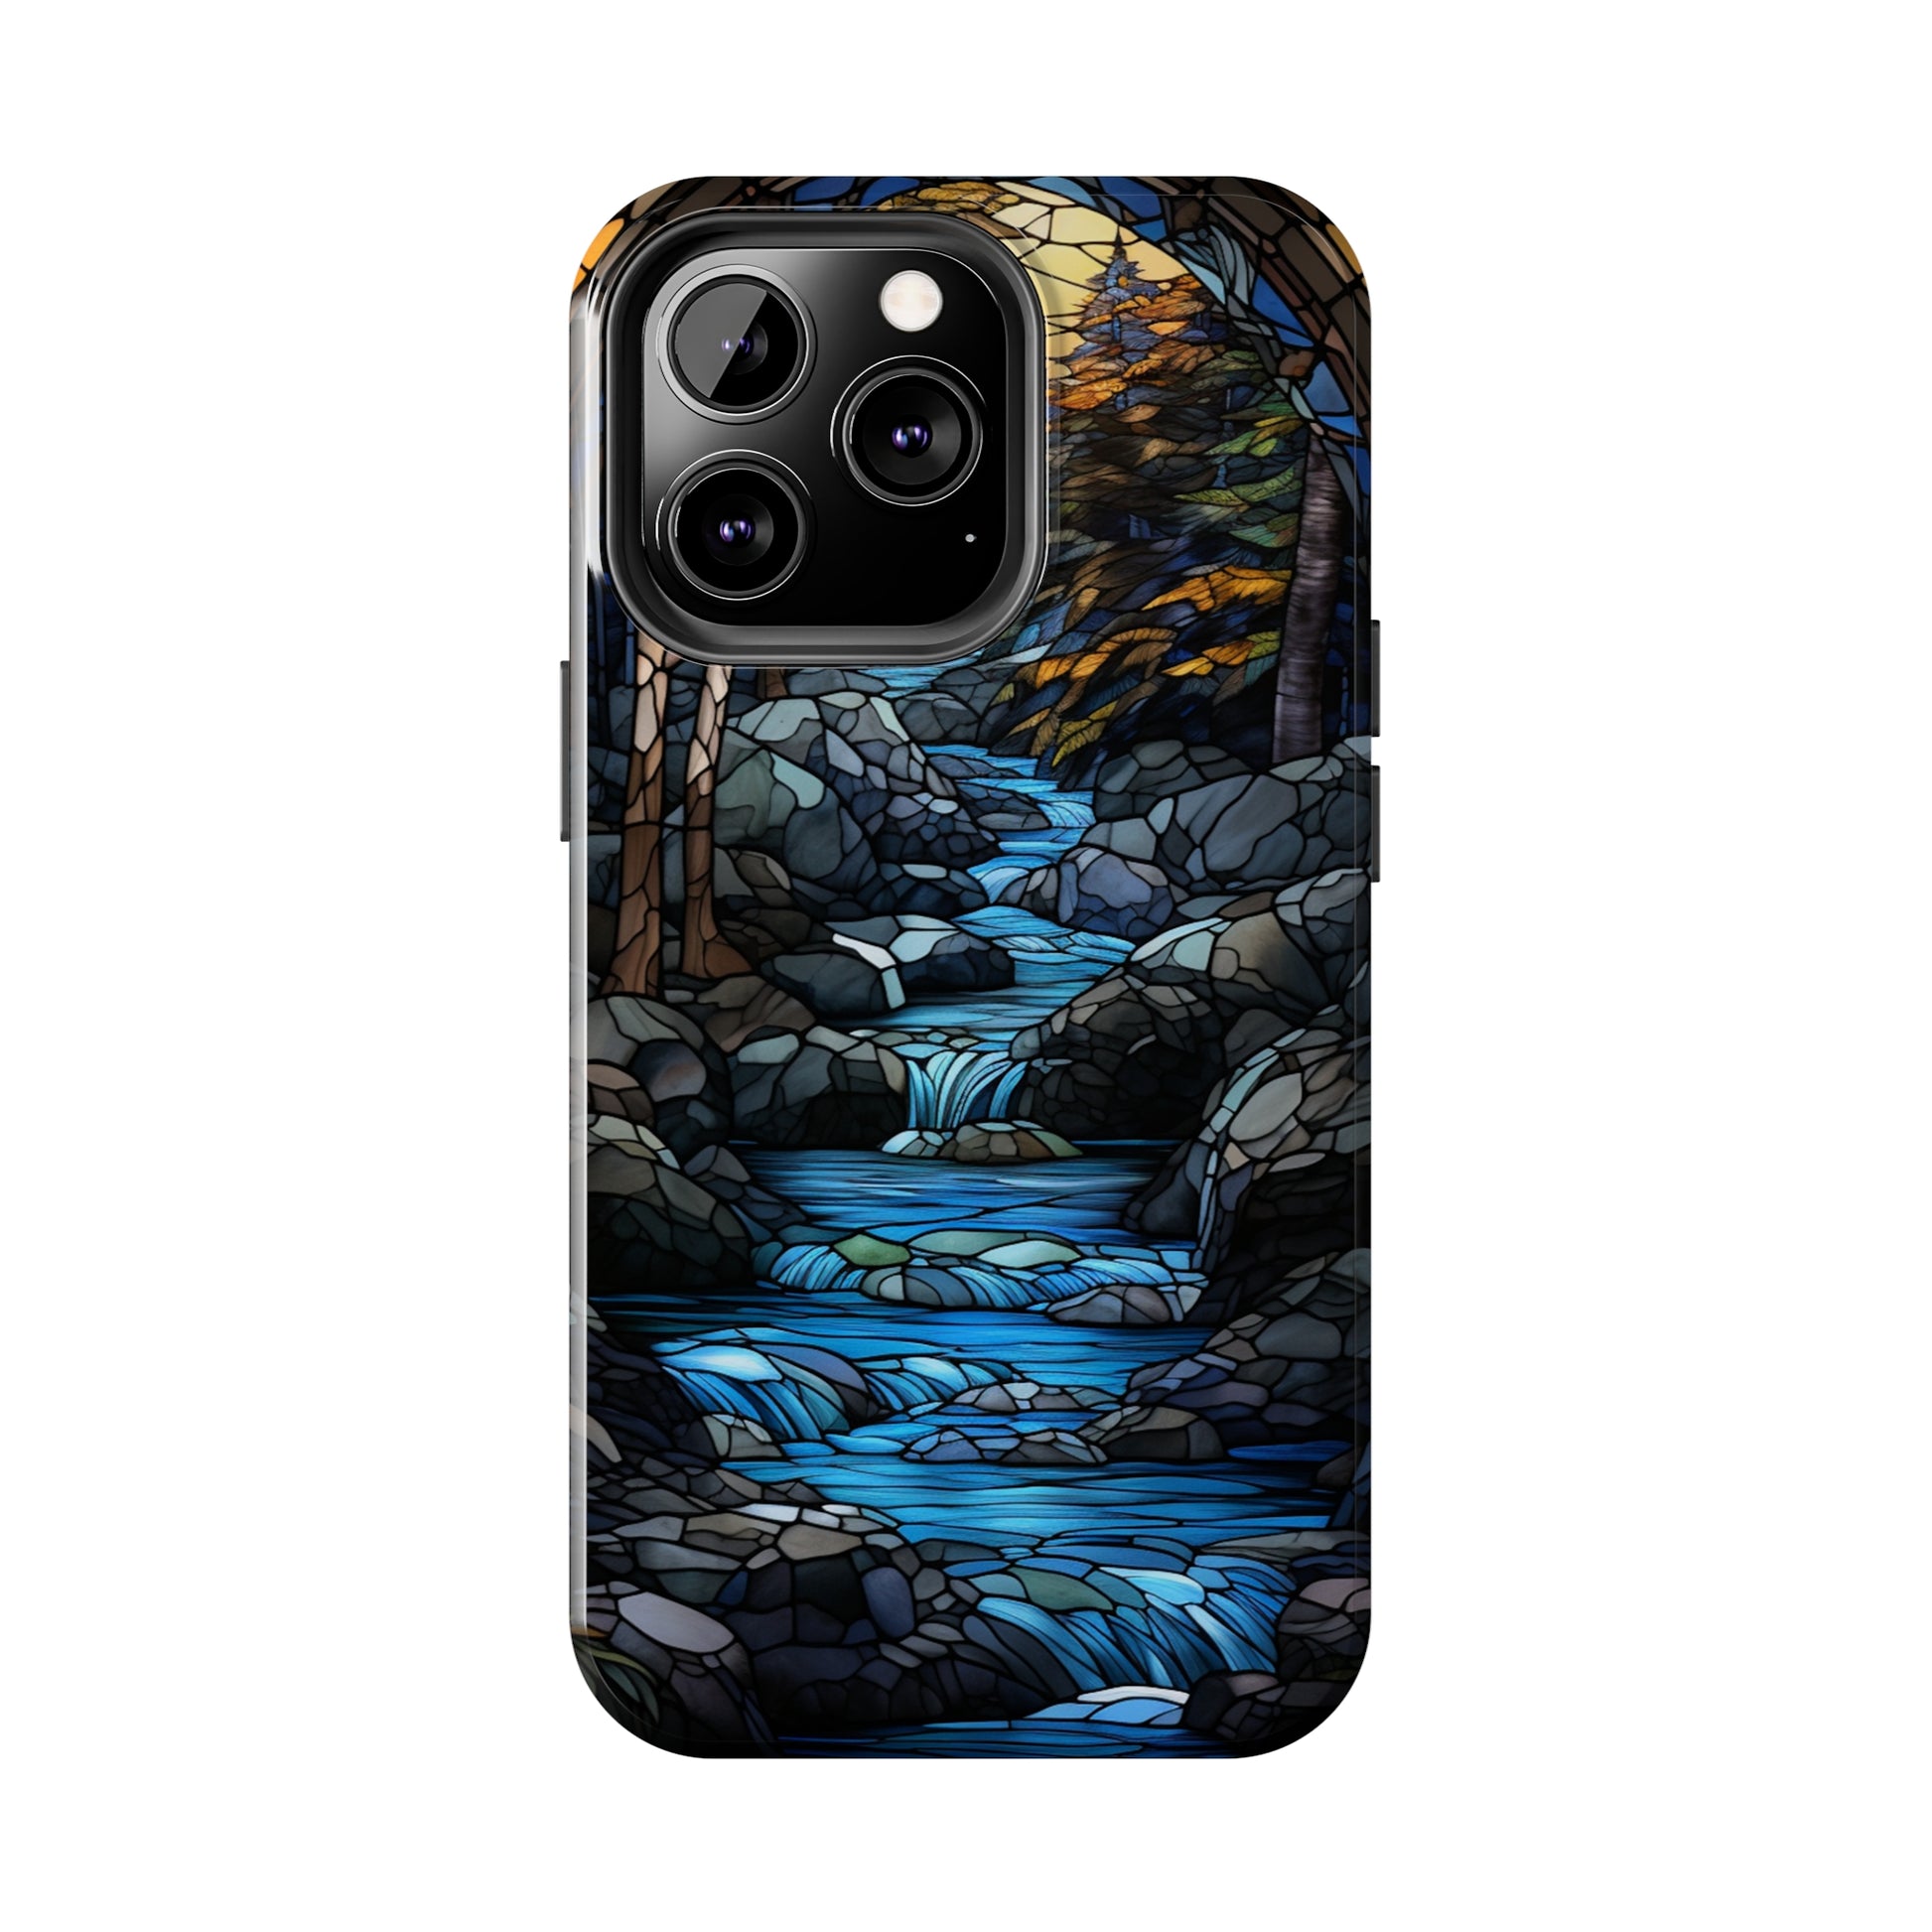 Elegant iPhone 11 Pro river design case